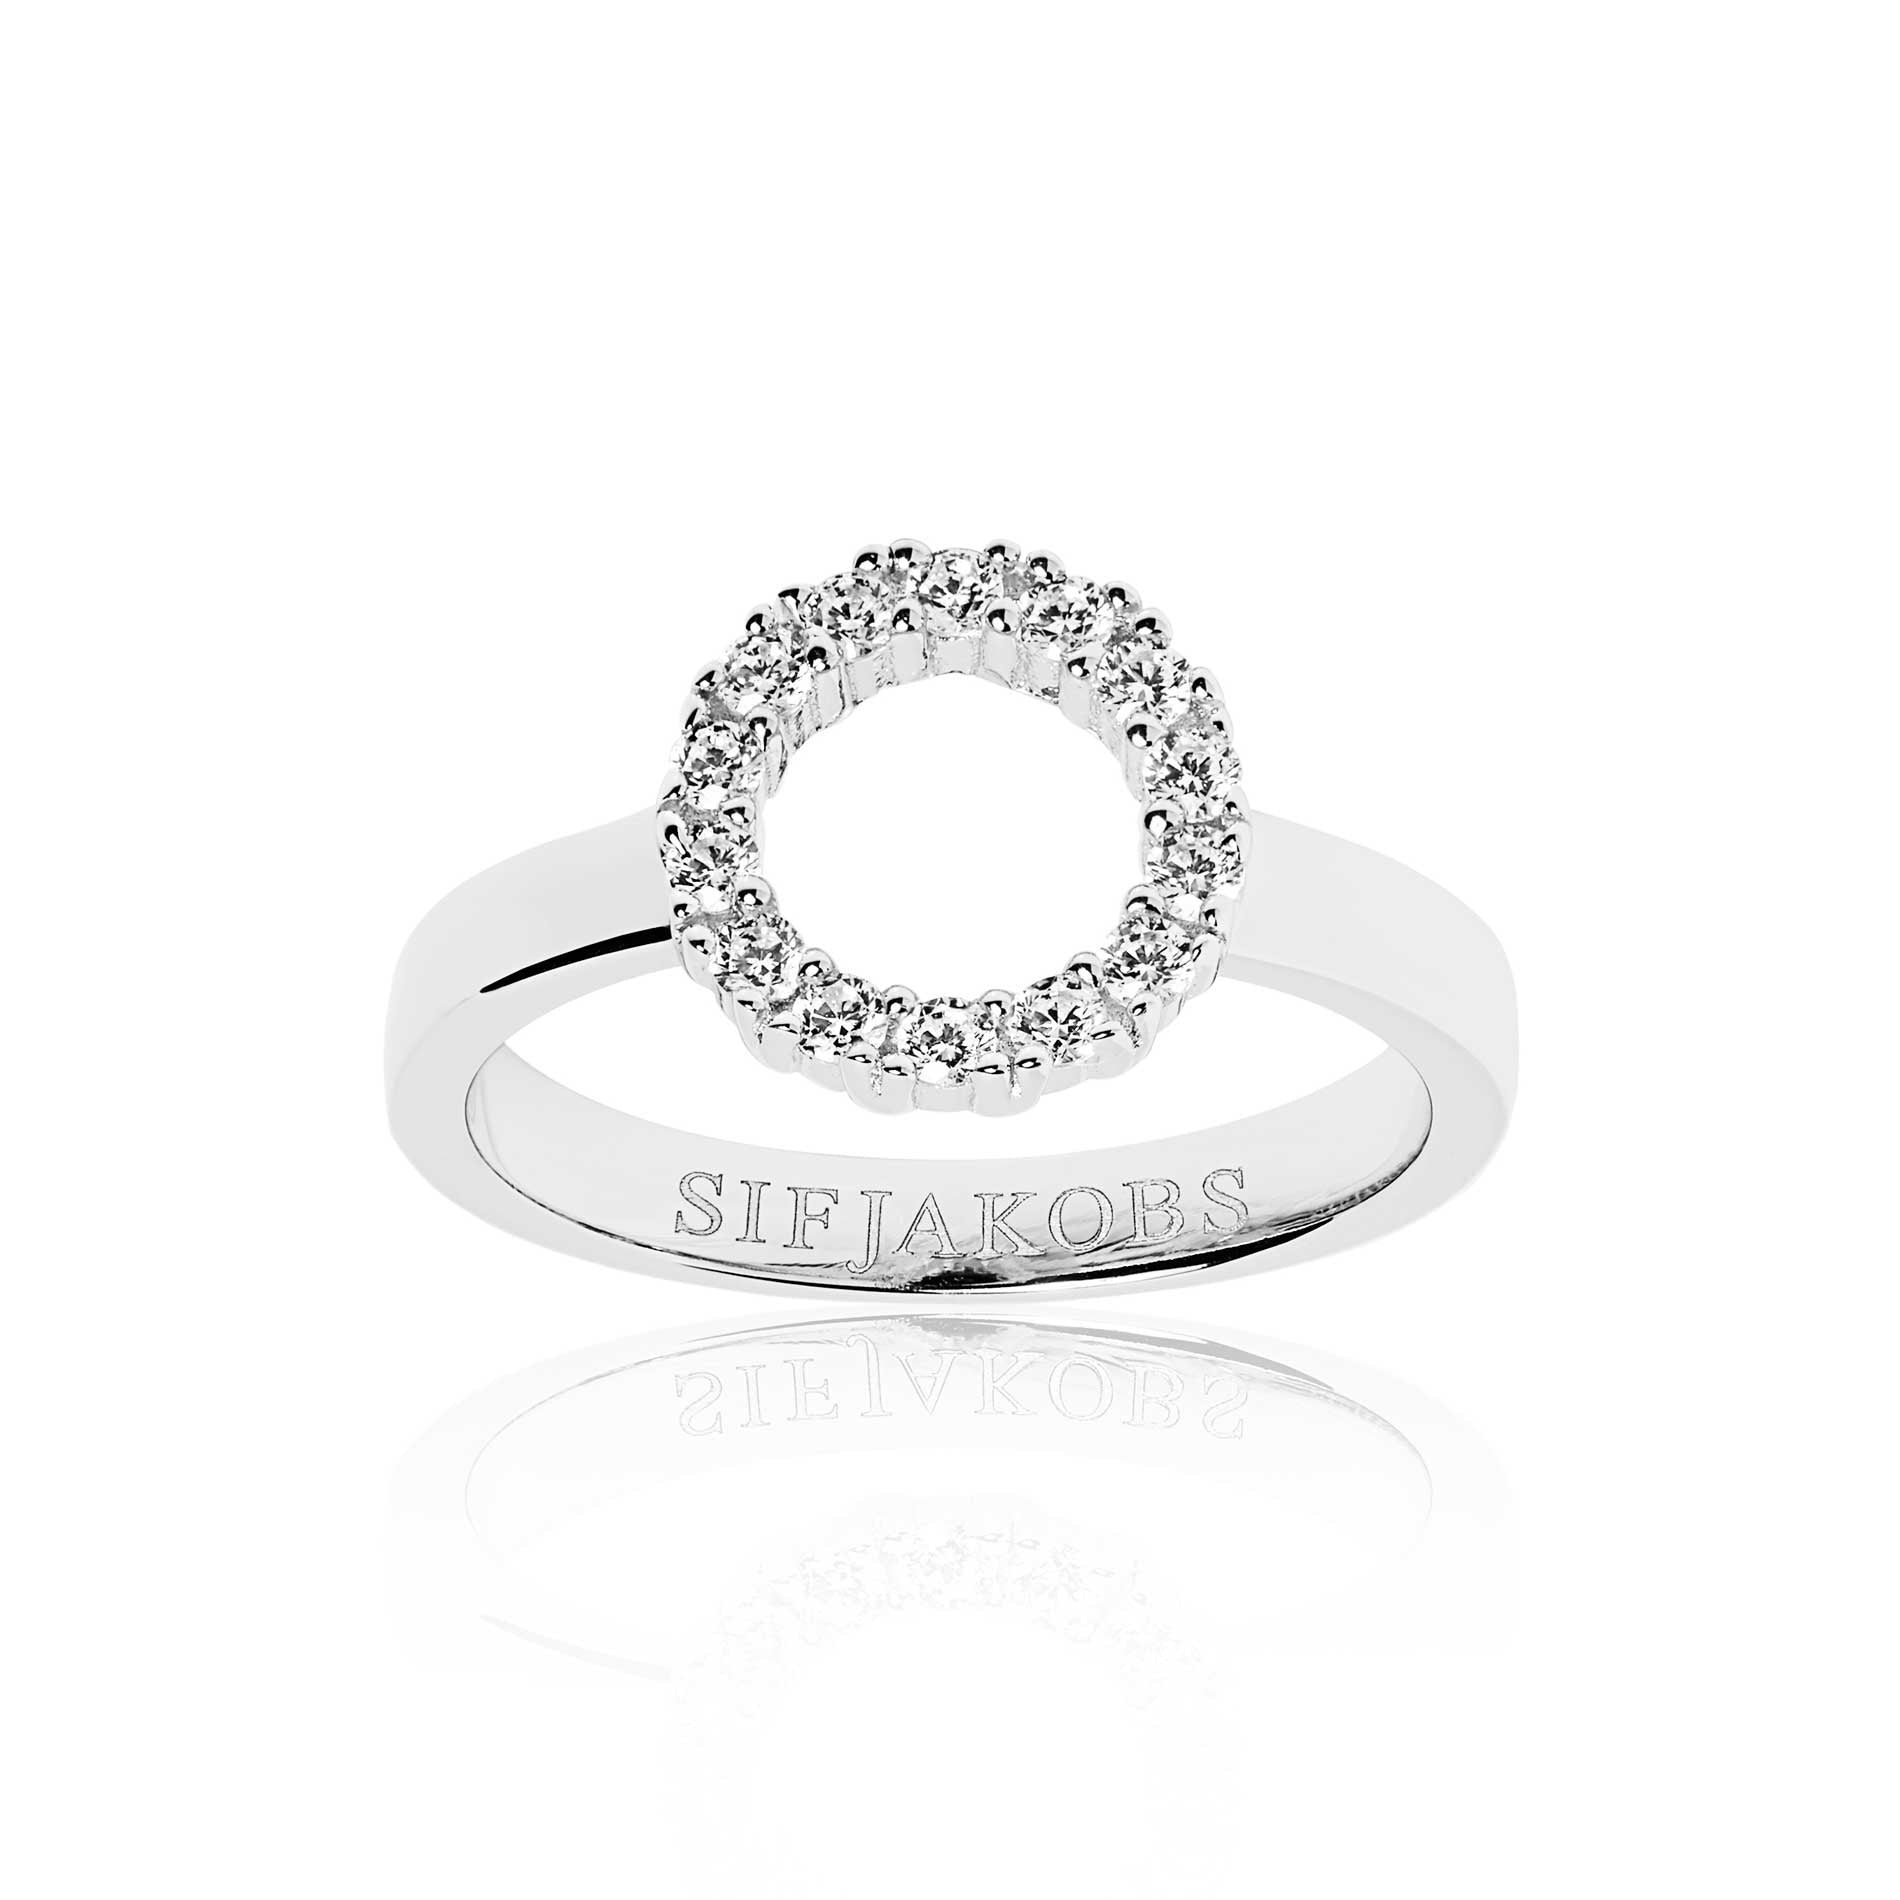 Sif Jakobs Biella Piccolo ring i sterling sølv med hvide zirkonia sten